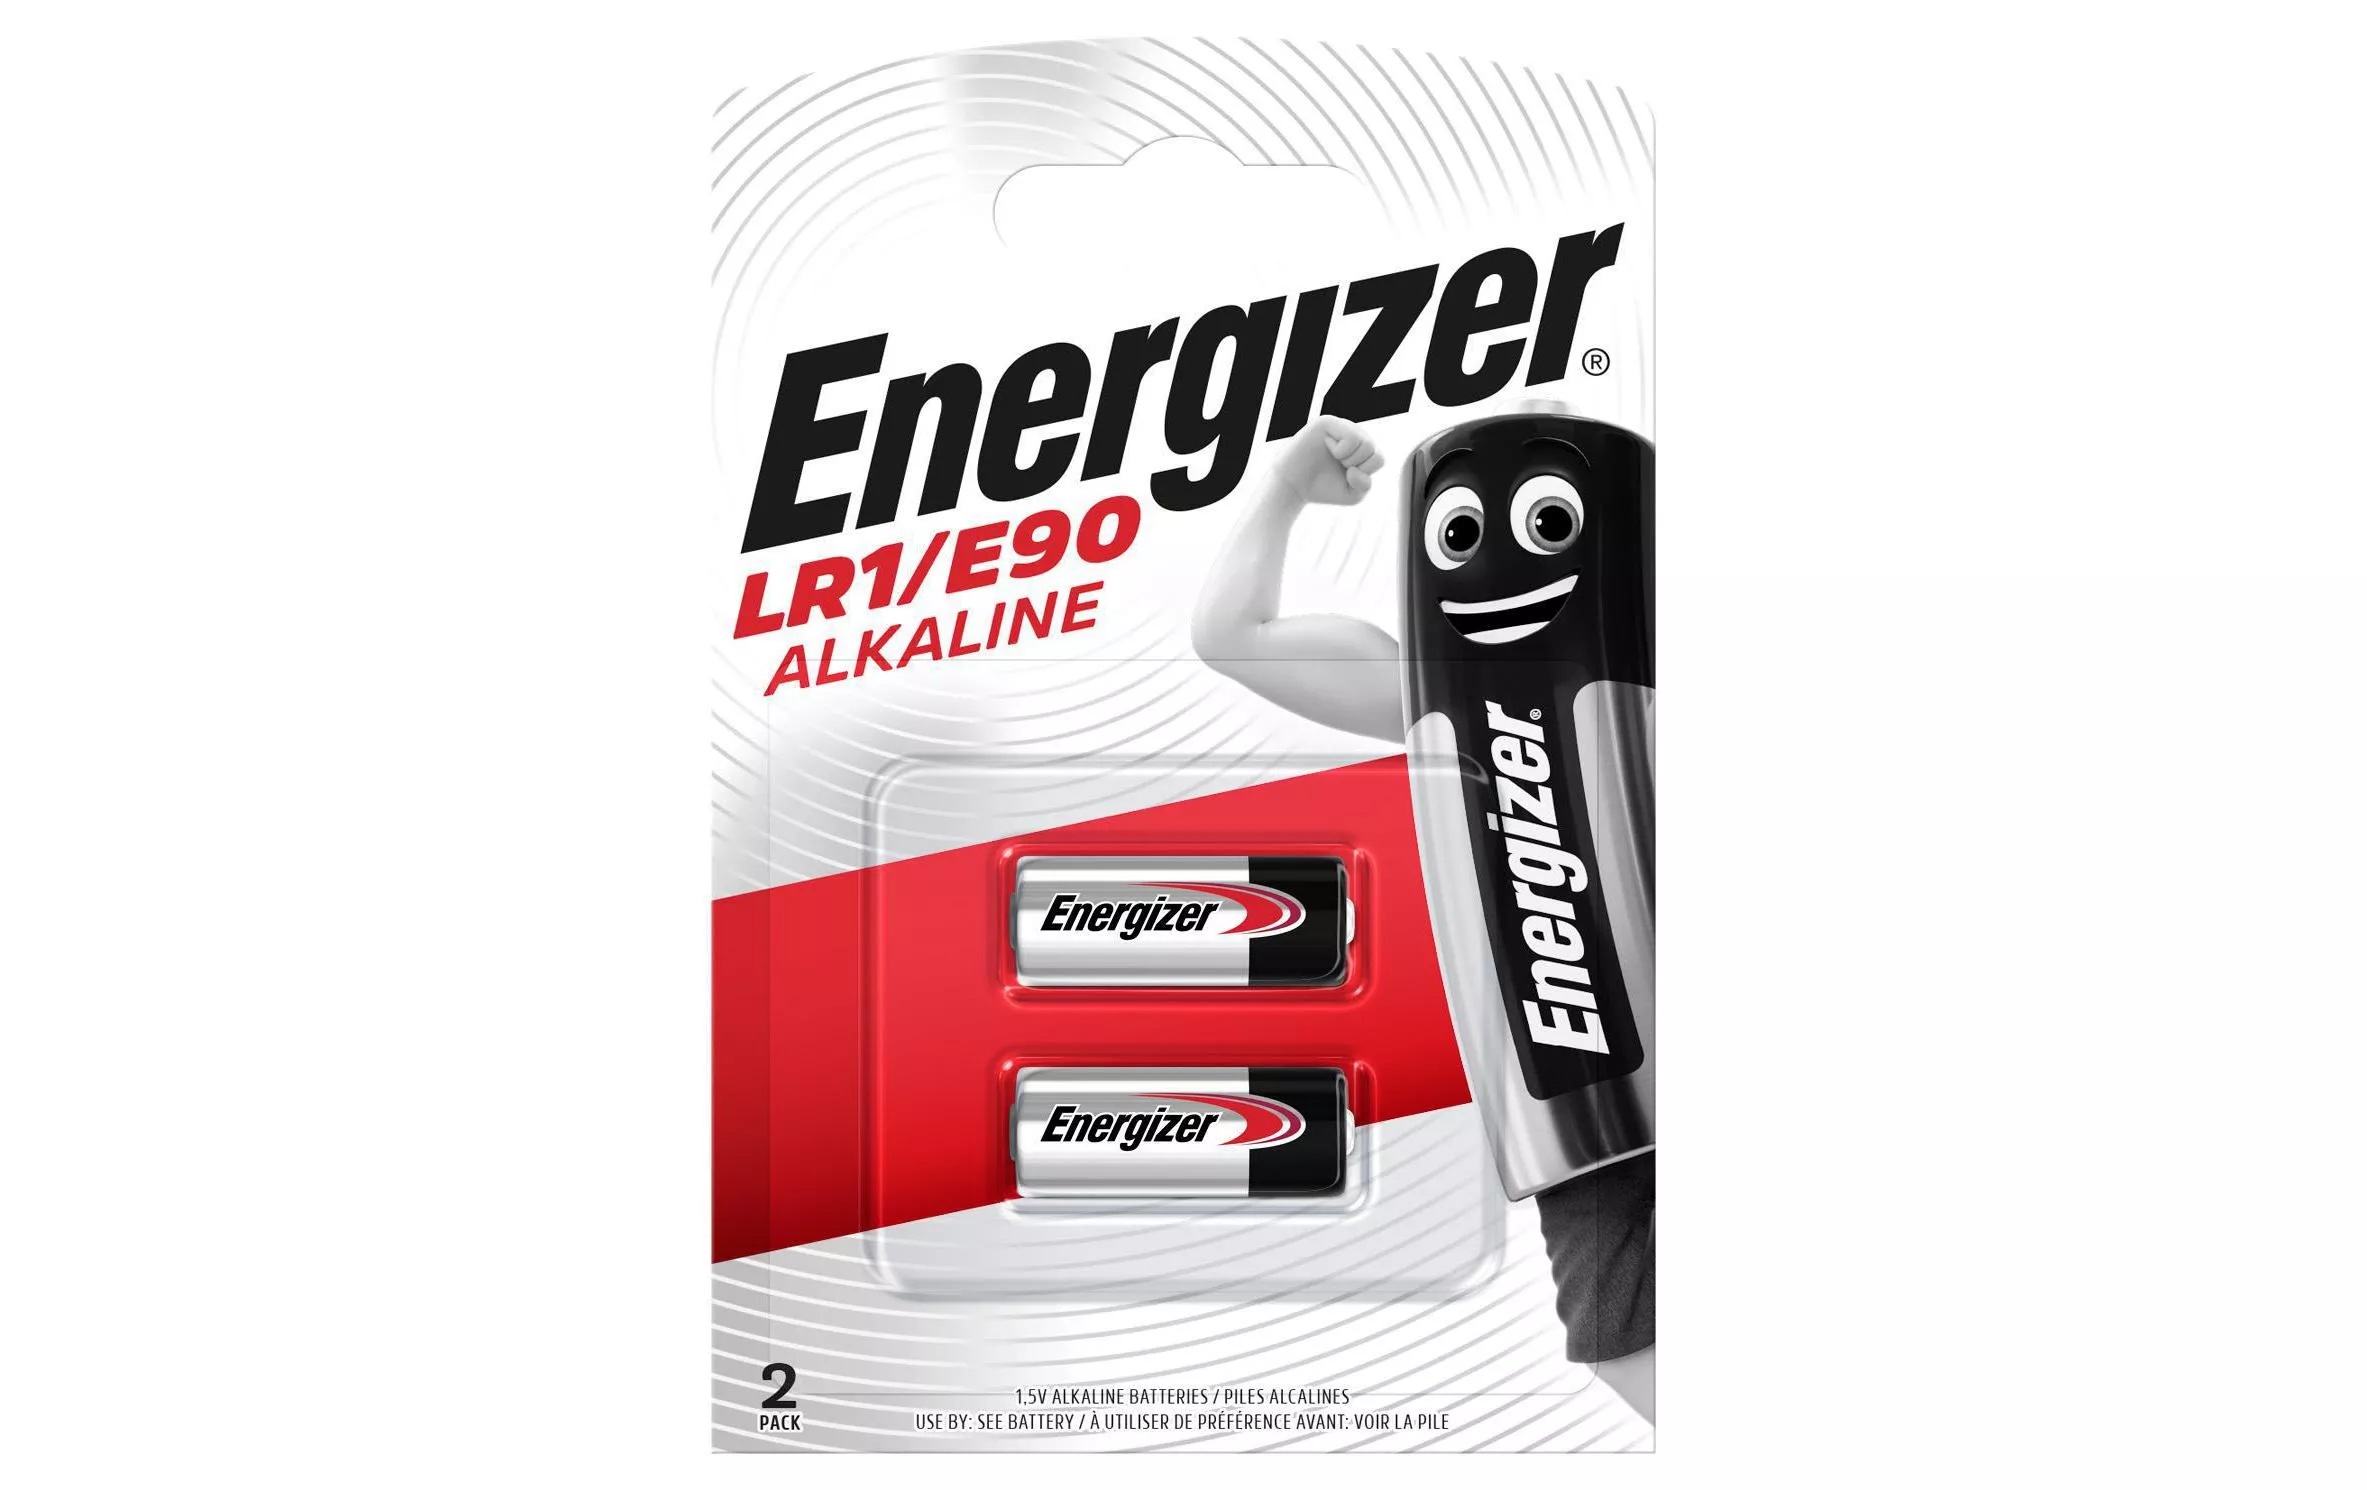 Batterie Alkaline LR1 / E90 2 Stück